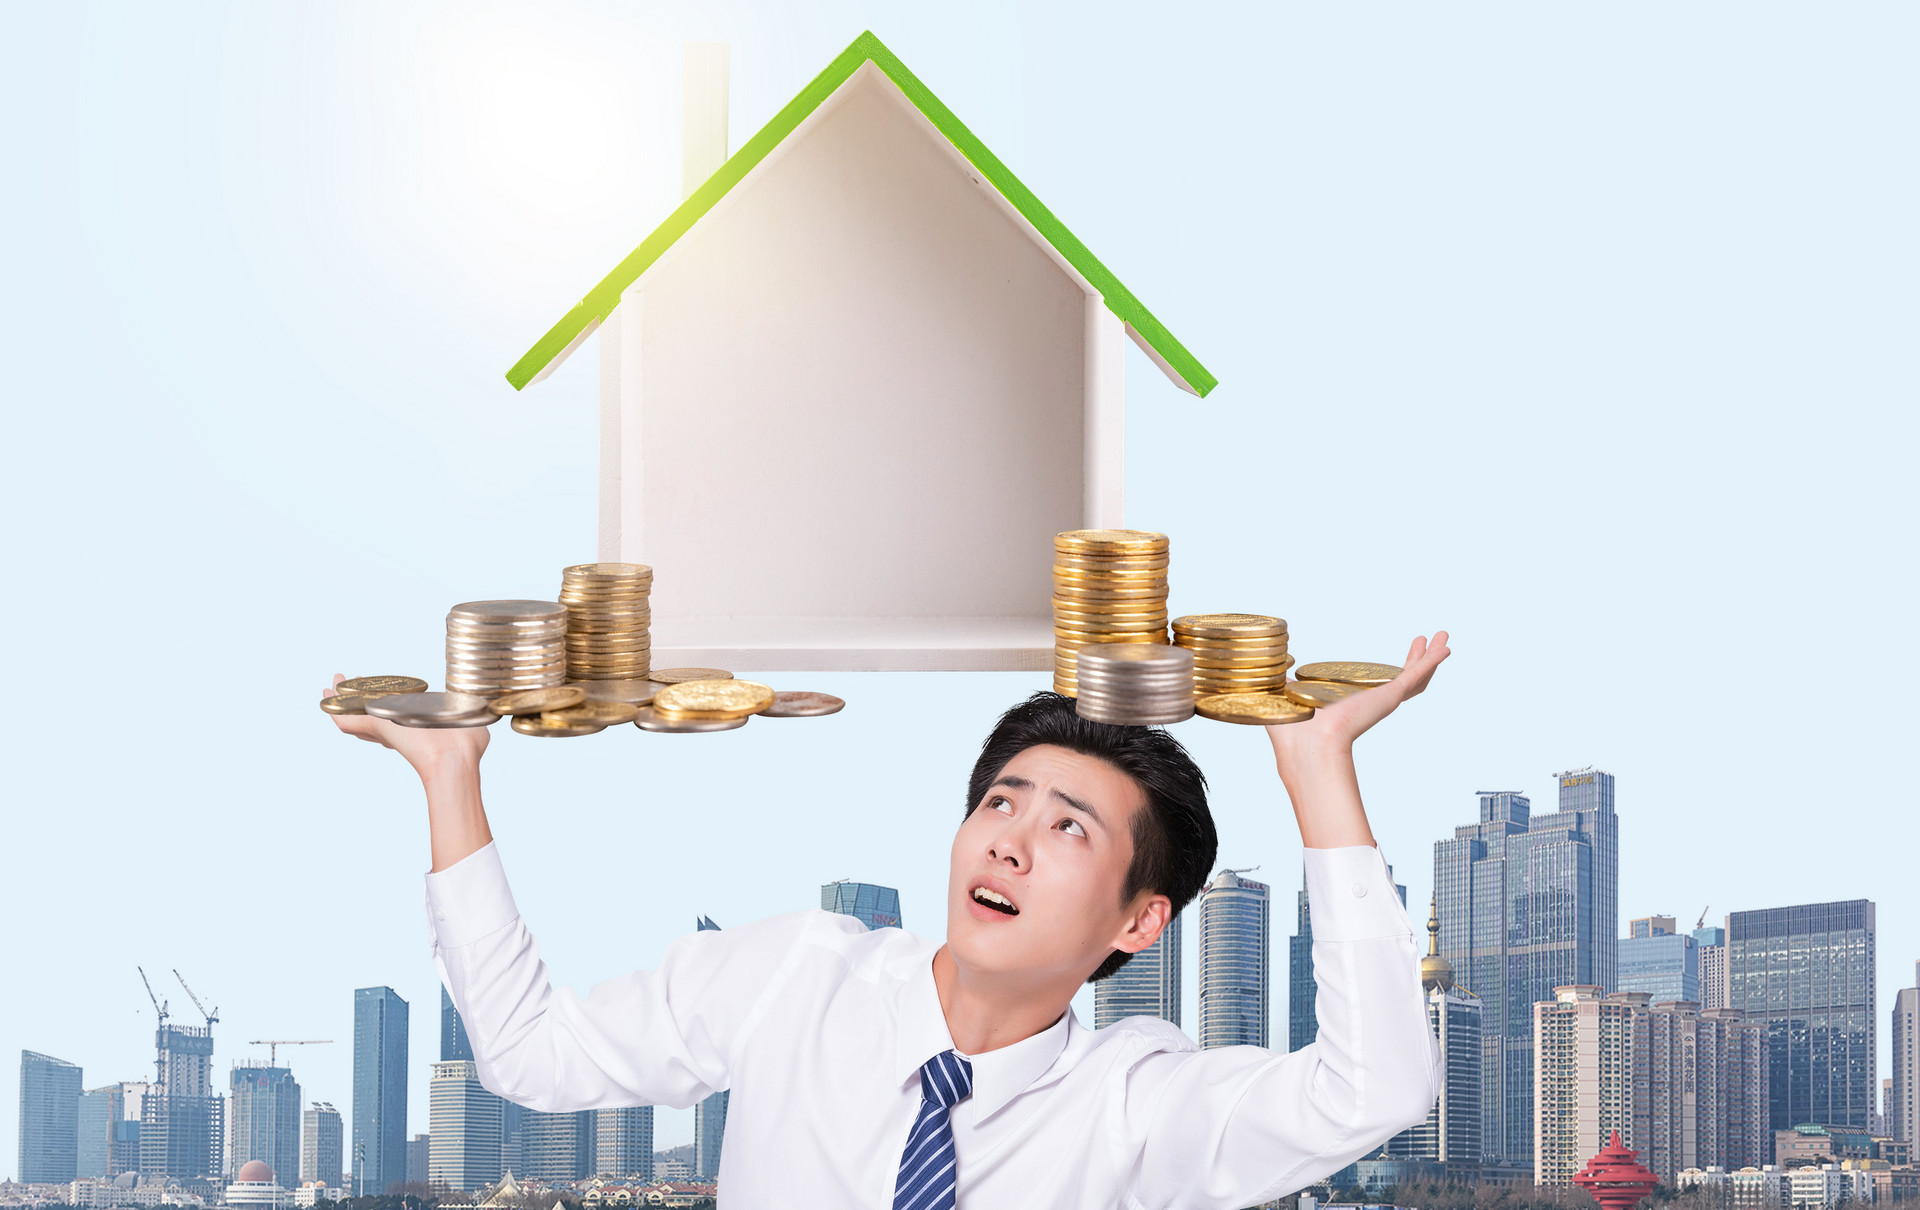 楼市松绑，首付降低利率下调，直接吸引合理住房需求的购房者。